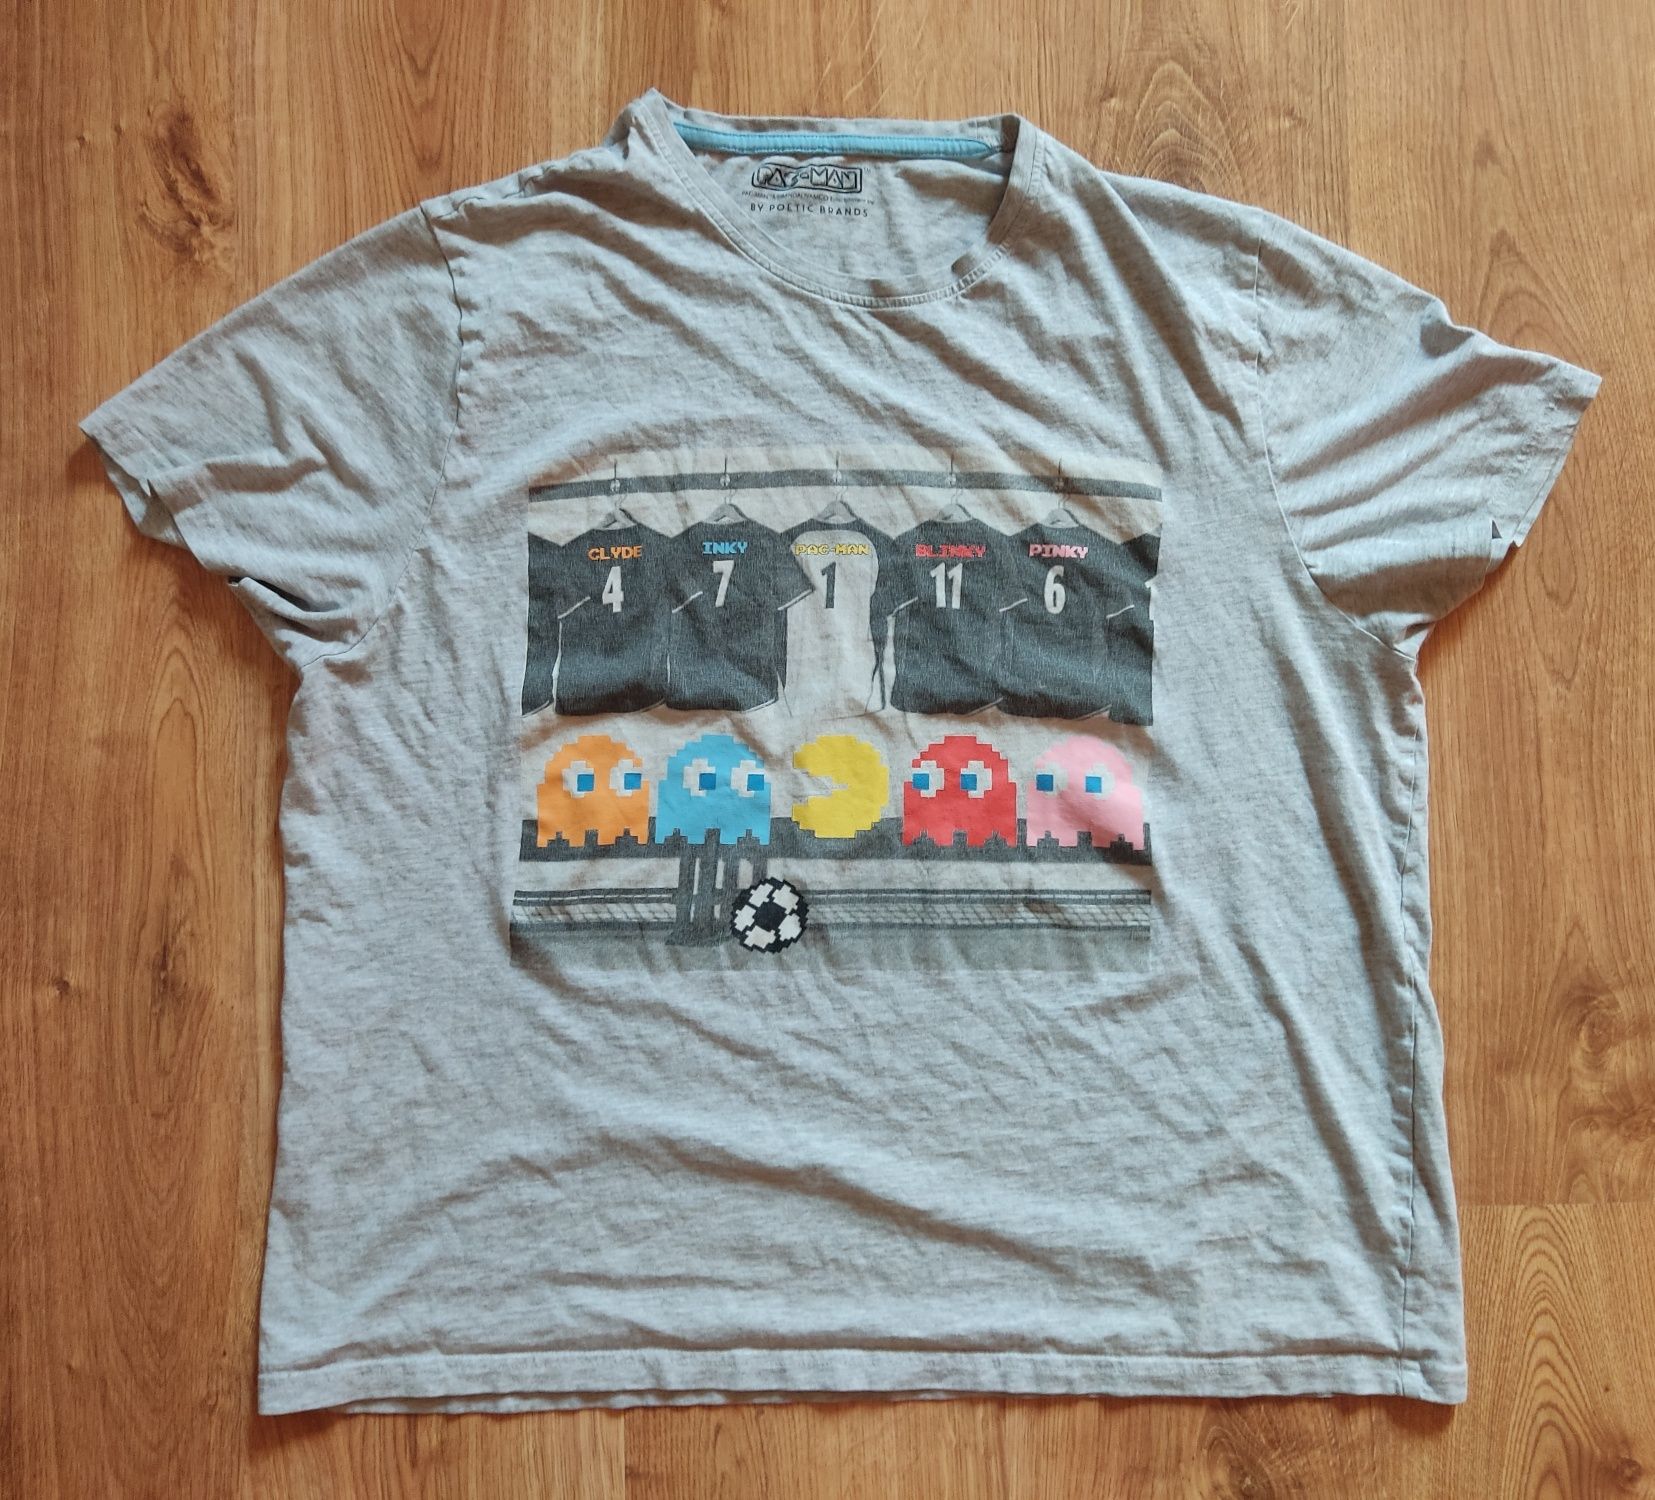 Koszulka z gry Pac-man (licencja Bandai Namco) firmy George, XL.